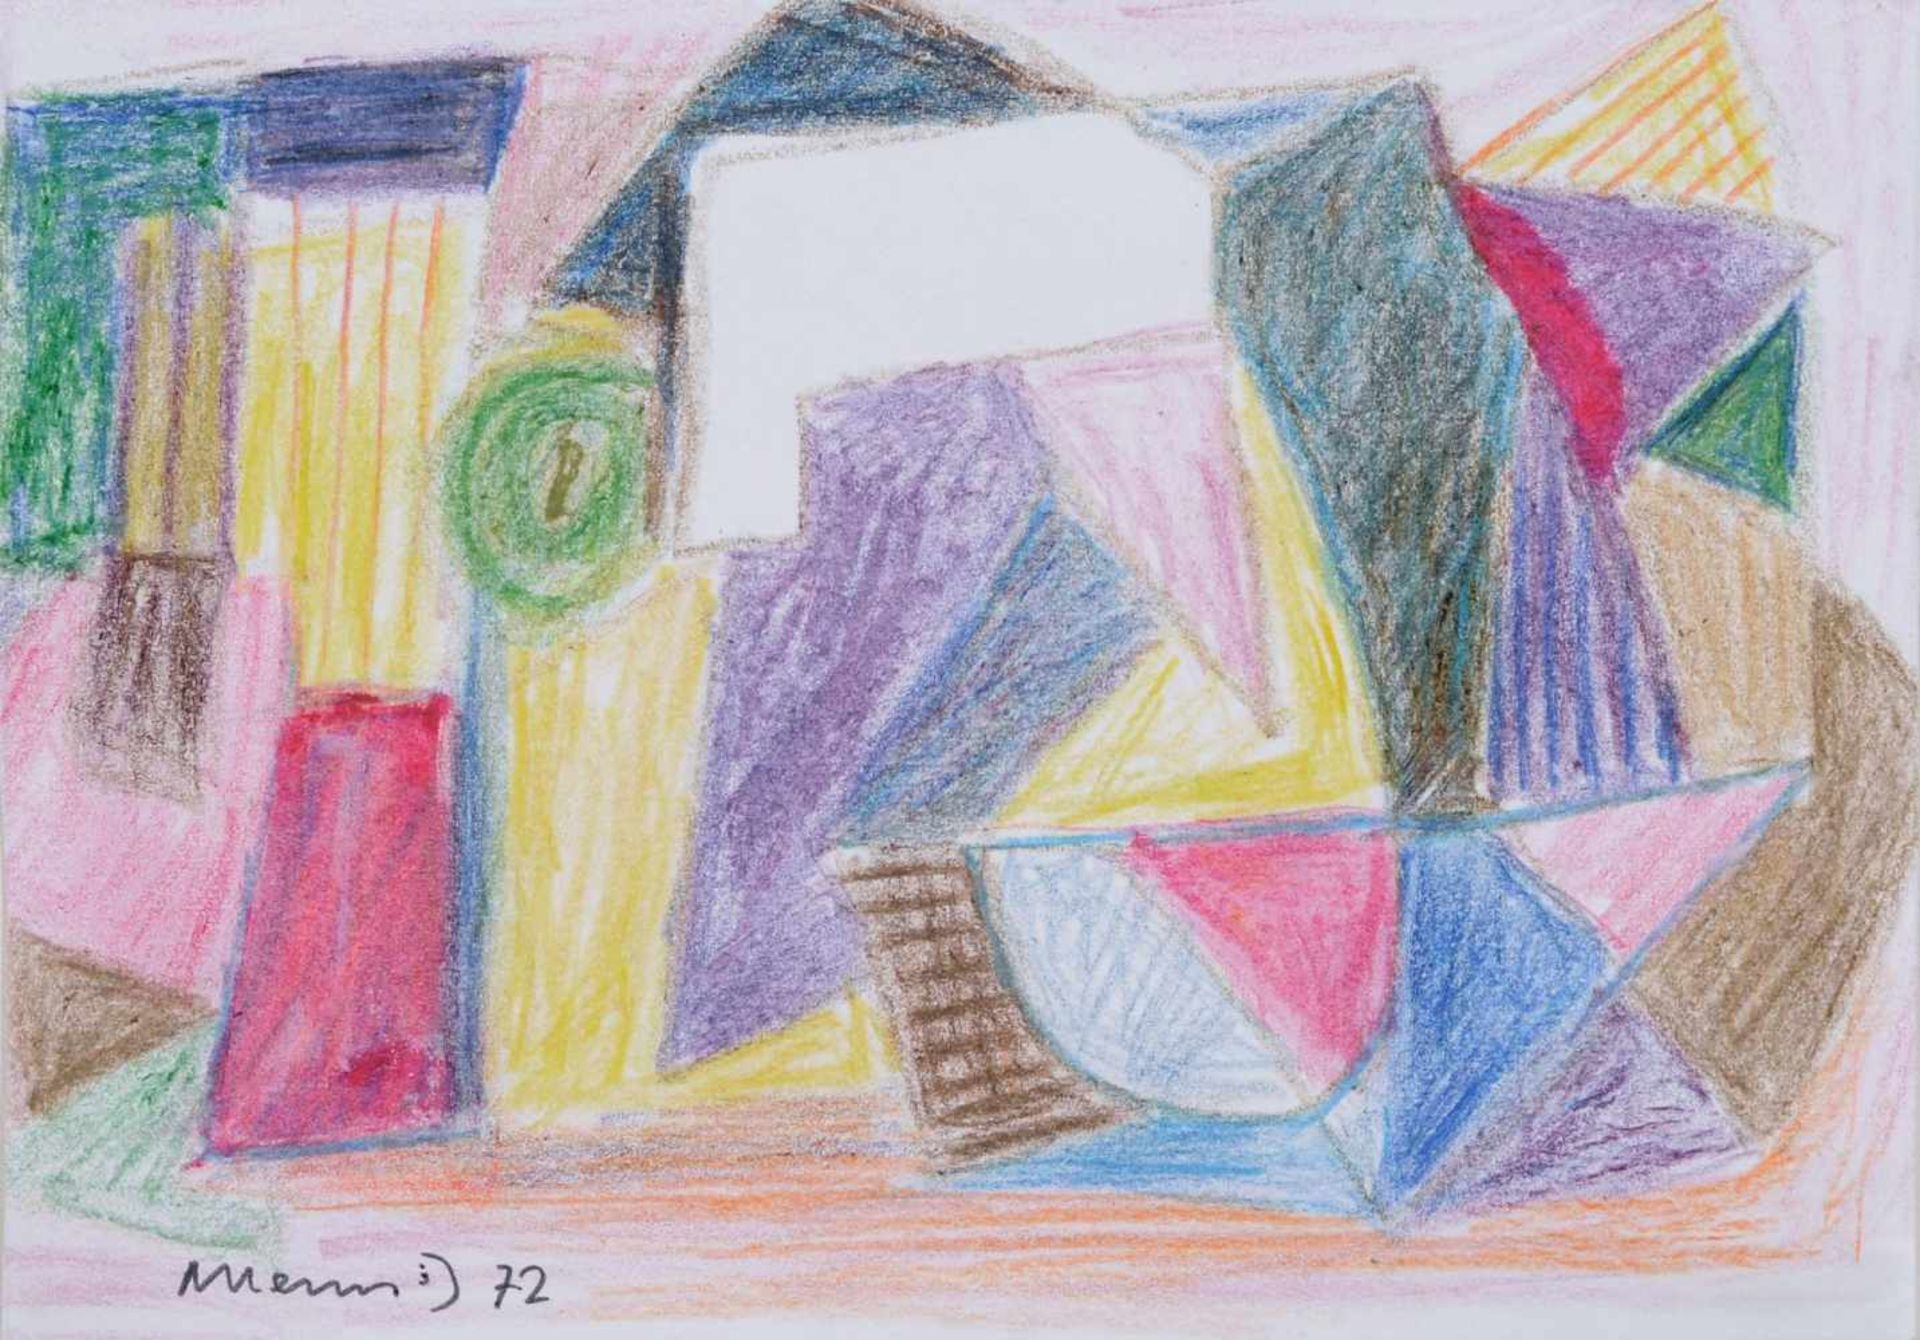 Albert Hennig, Komposition mit Dreiecken in Rosa und Violett. 1972. Farbstiftzeichnung. In